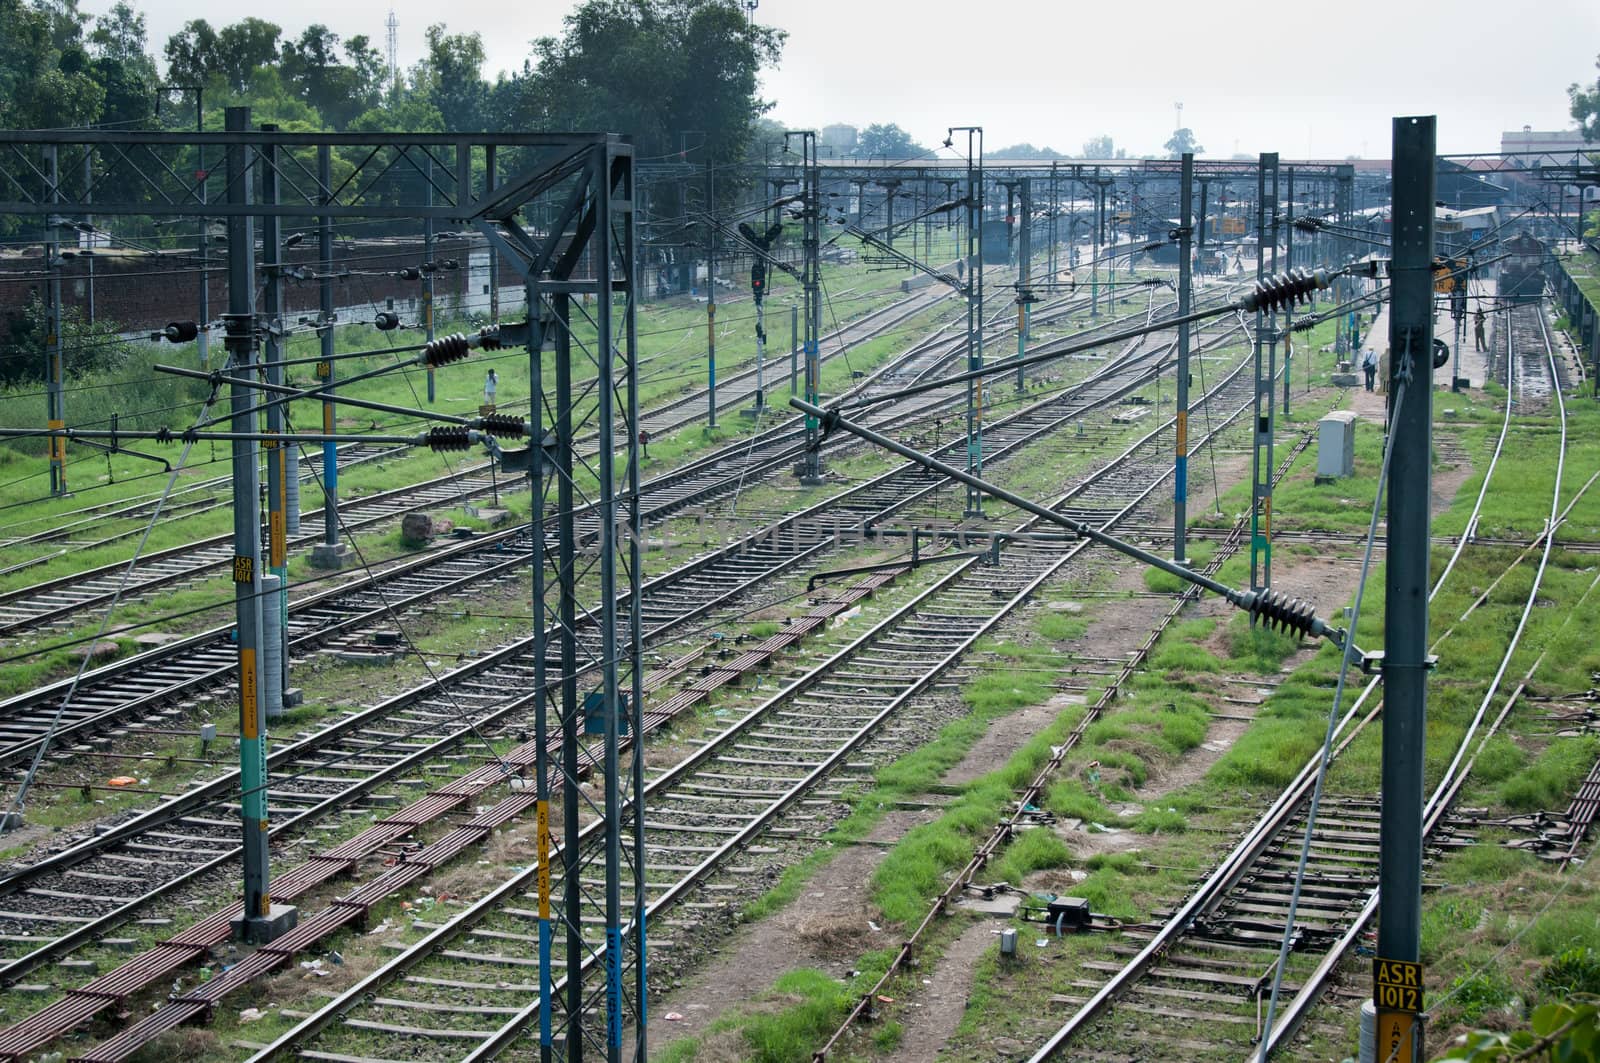 Tracks of the Indian railway on a station by iryna_rasko